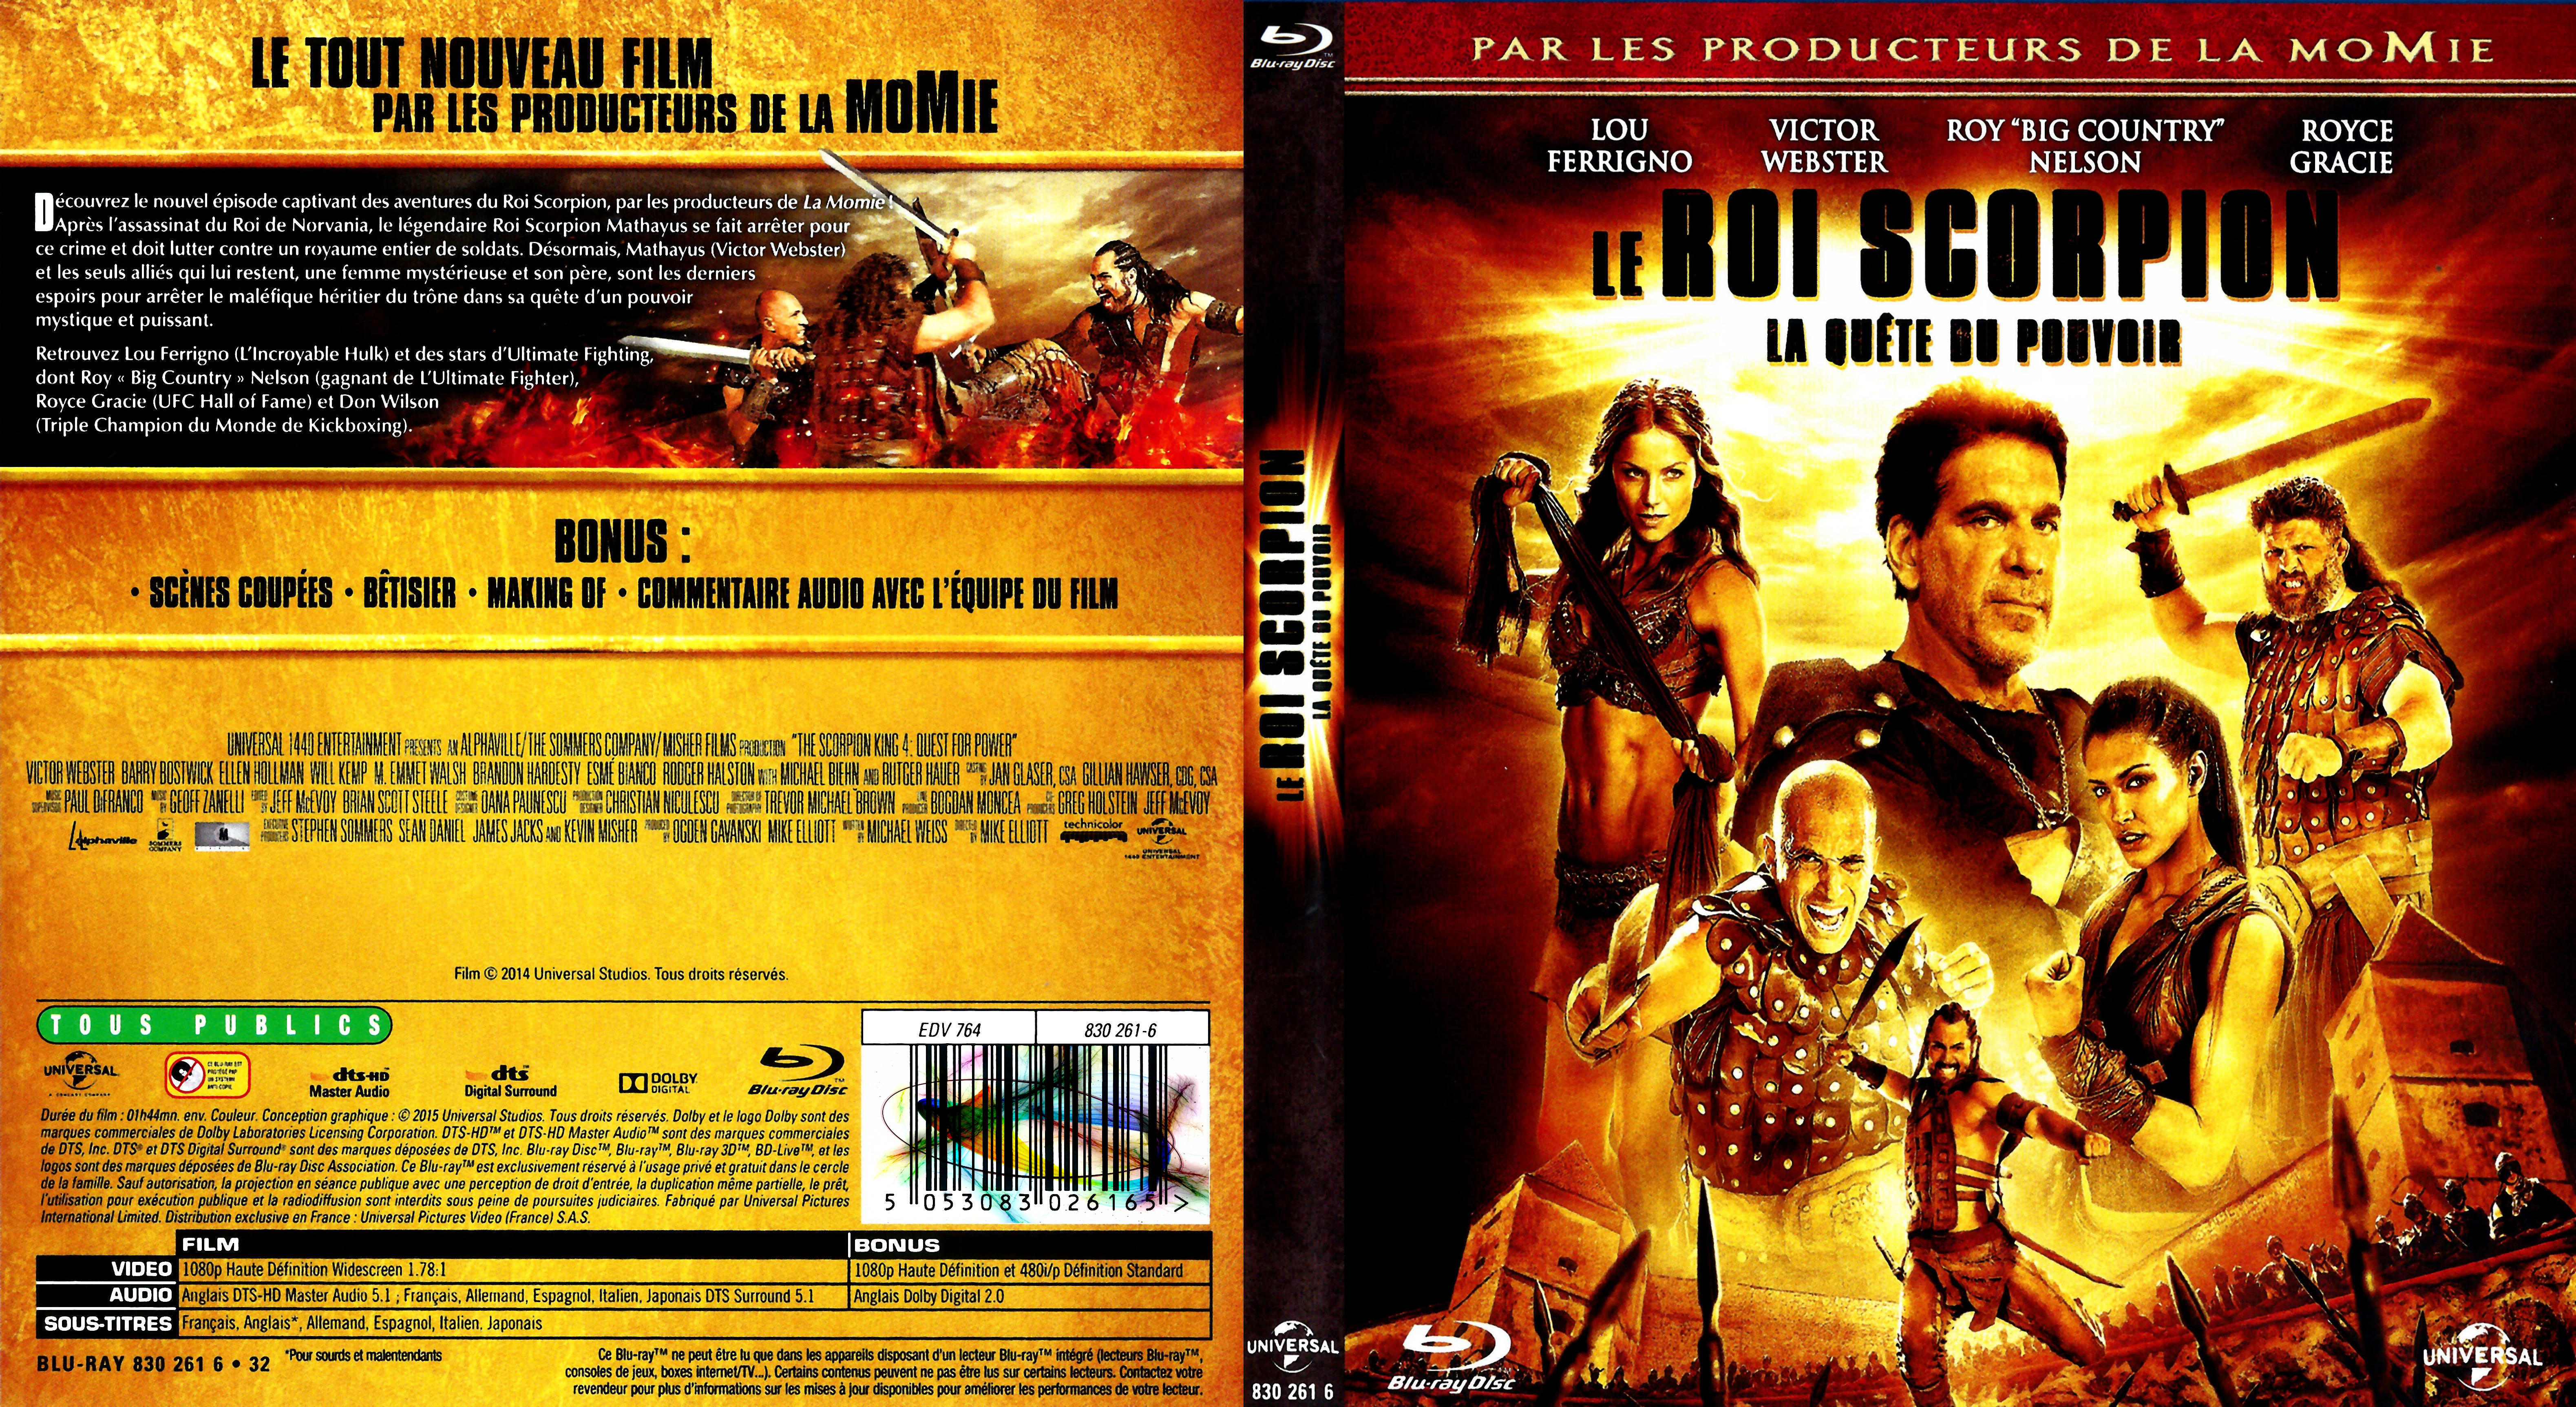 Jaquette DVD Le Roi Scorpion 4 La qute du pouvoir (BLU-RAY)